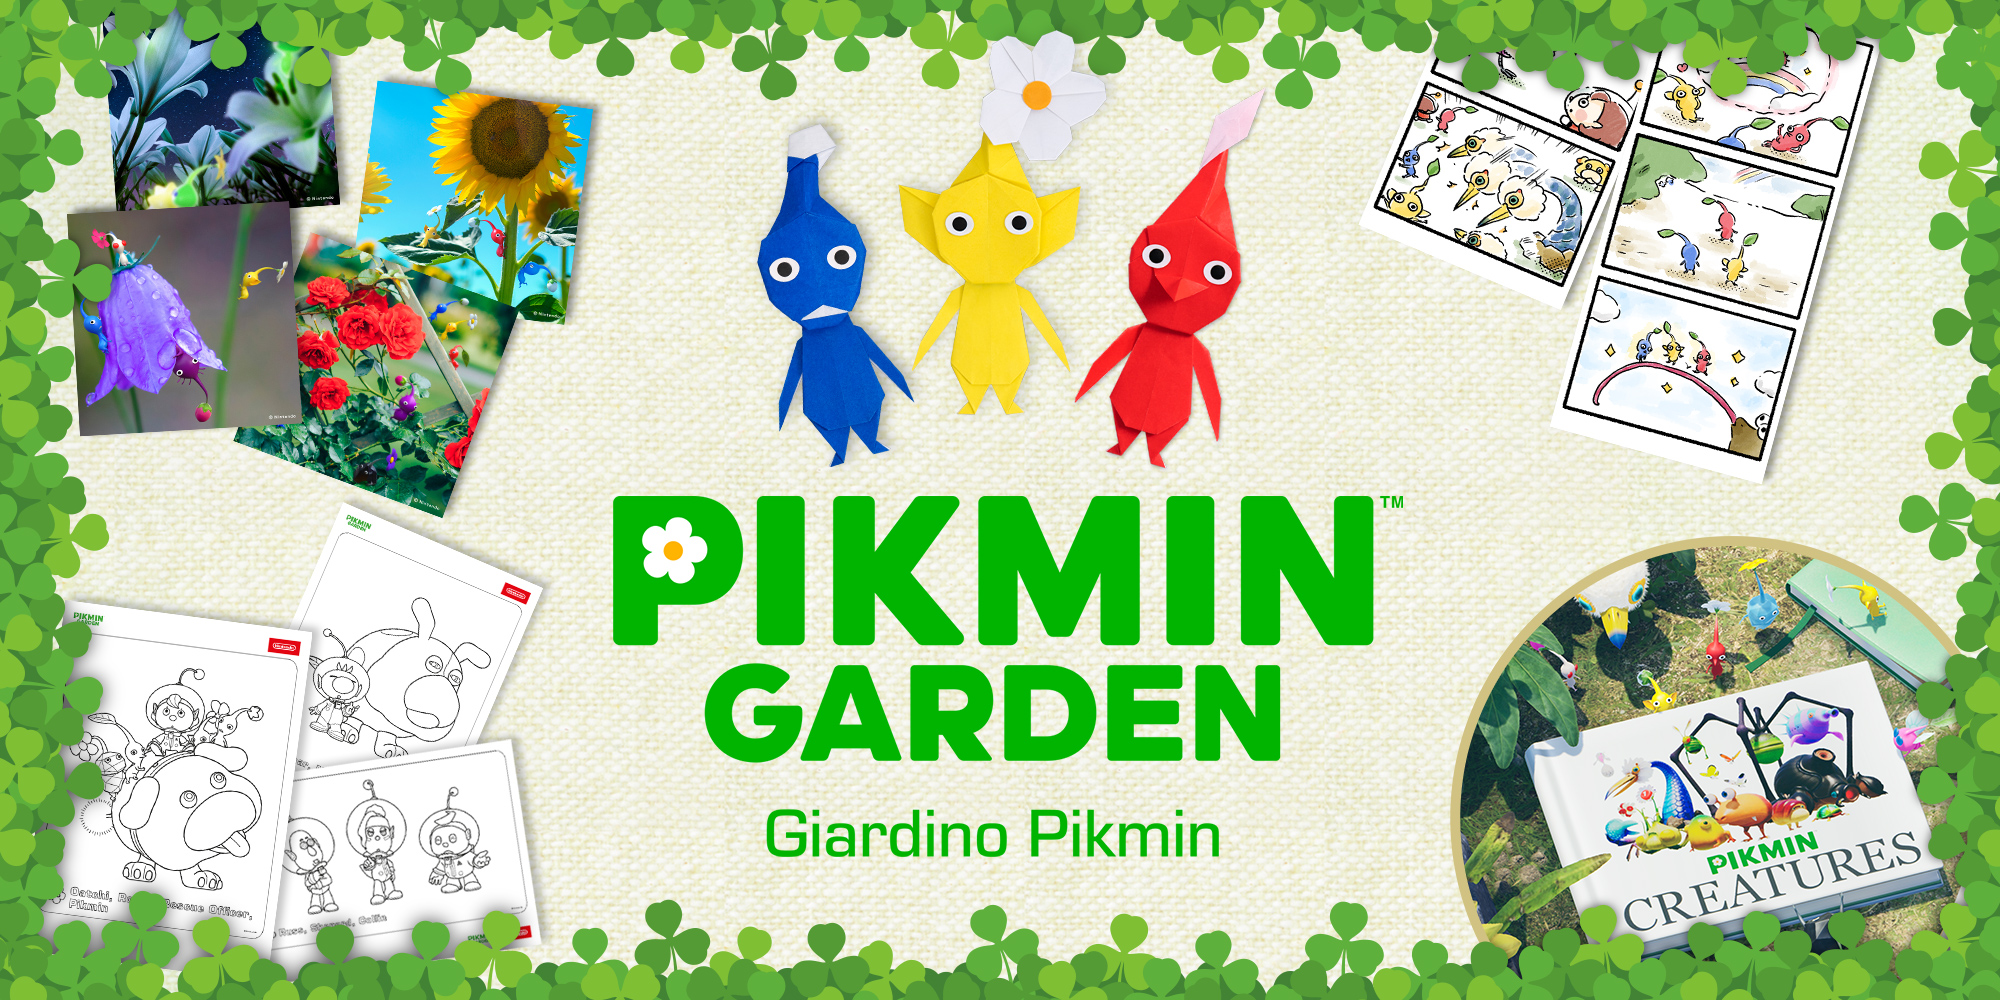 Giardino Pikmin